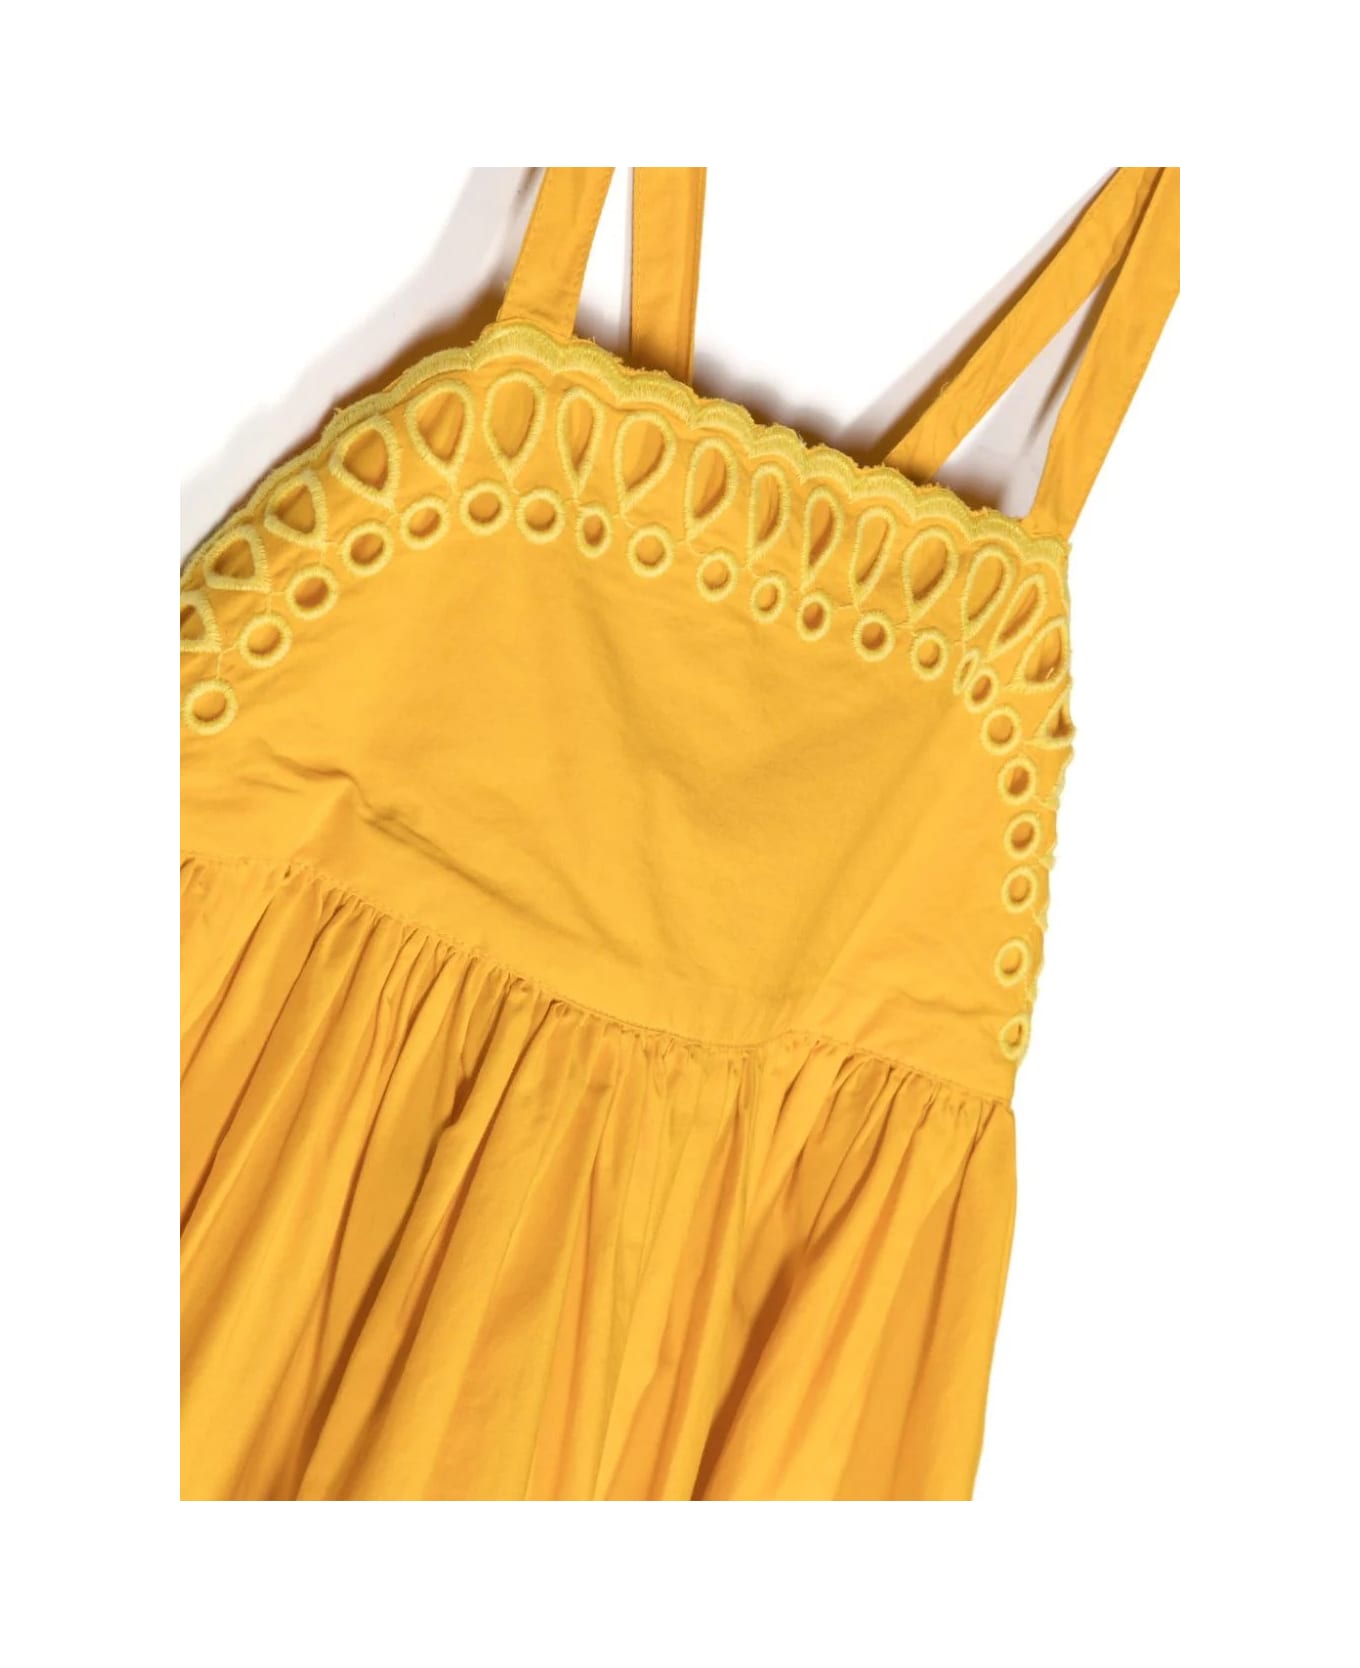 Stella McCartney Kids Yellow Sangallo Cami Dress - Yellow